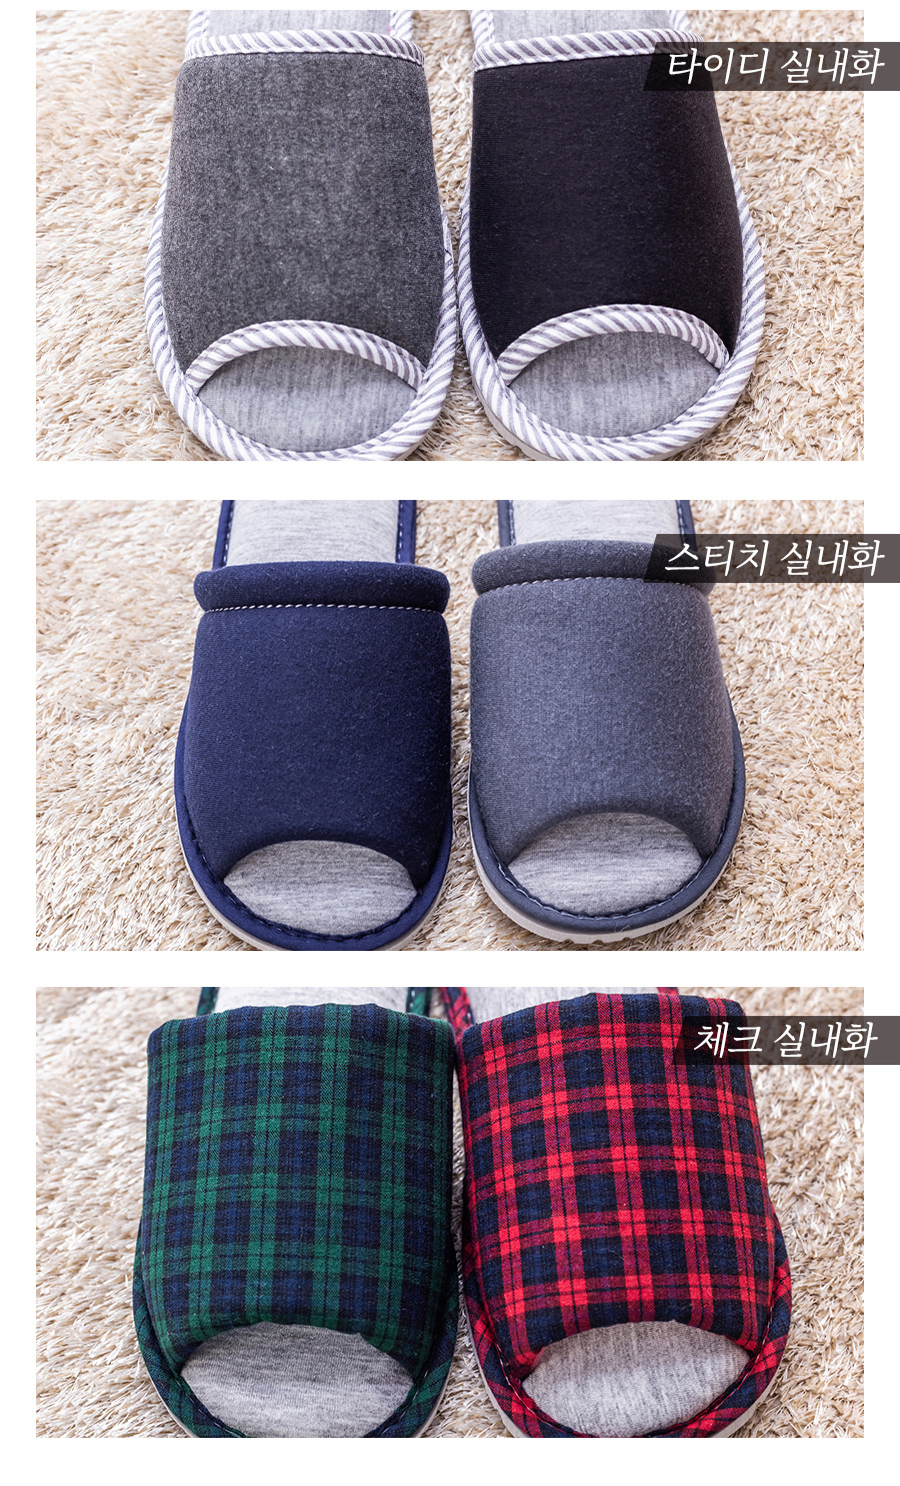 slippers1_04.jpg